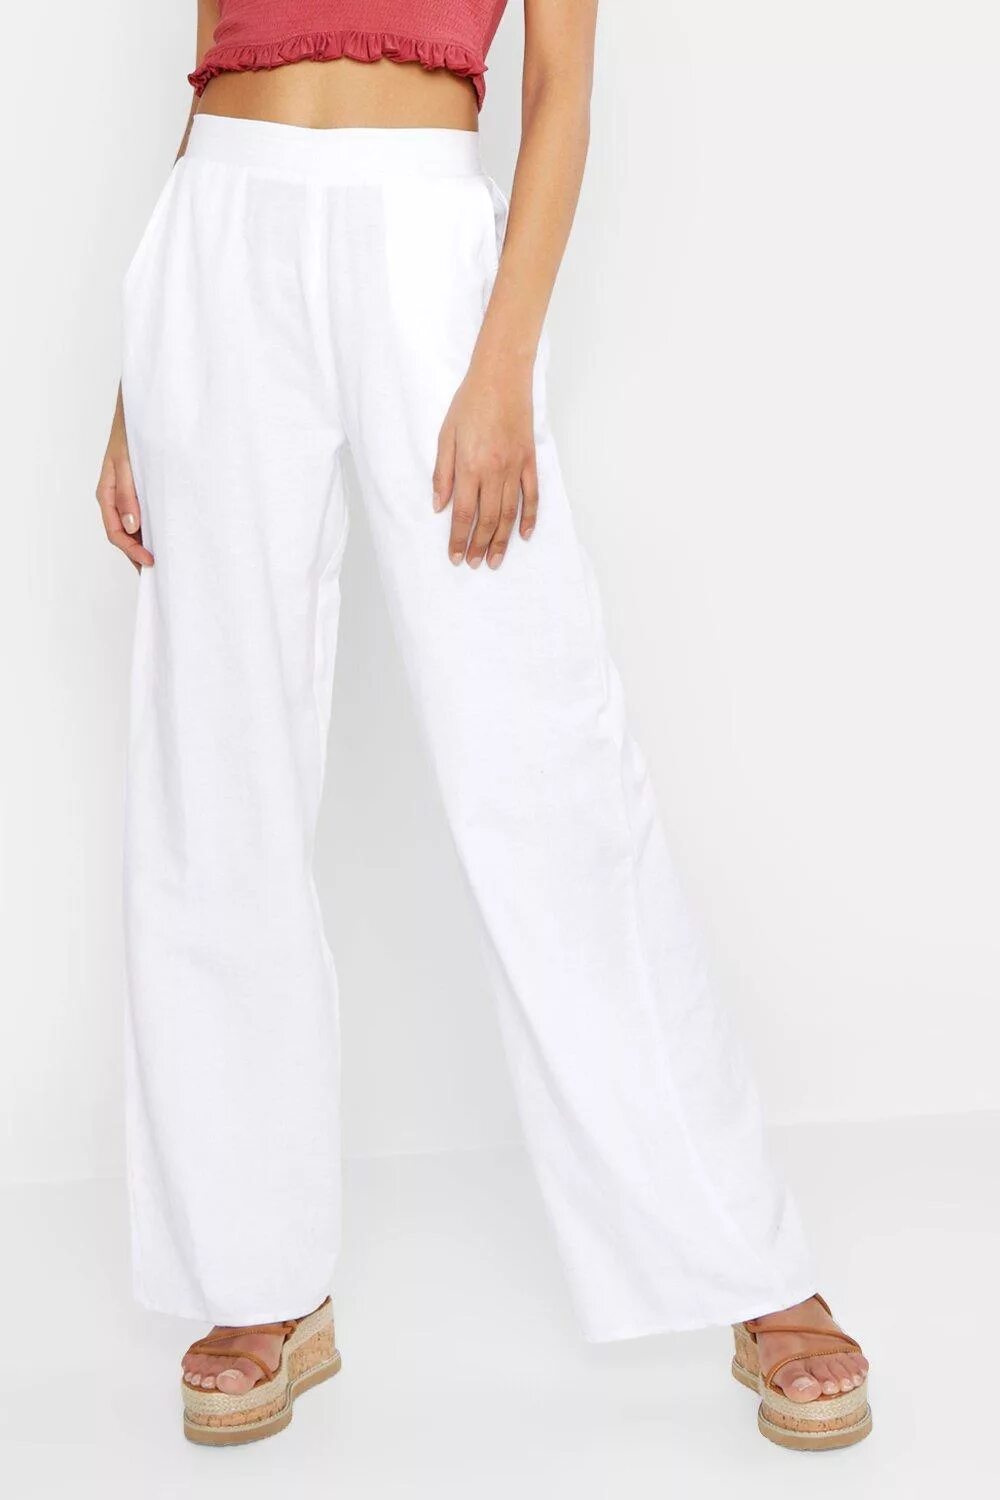 Черные льняные брюки. Женские льняные брюки Brax артикул p63235677. Брюки Yessica женские лен themo1. Белые льняные брюки Mexx. Белые женские льняные брюки Canda.